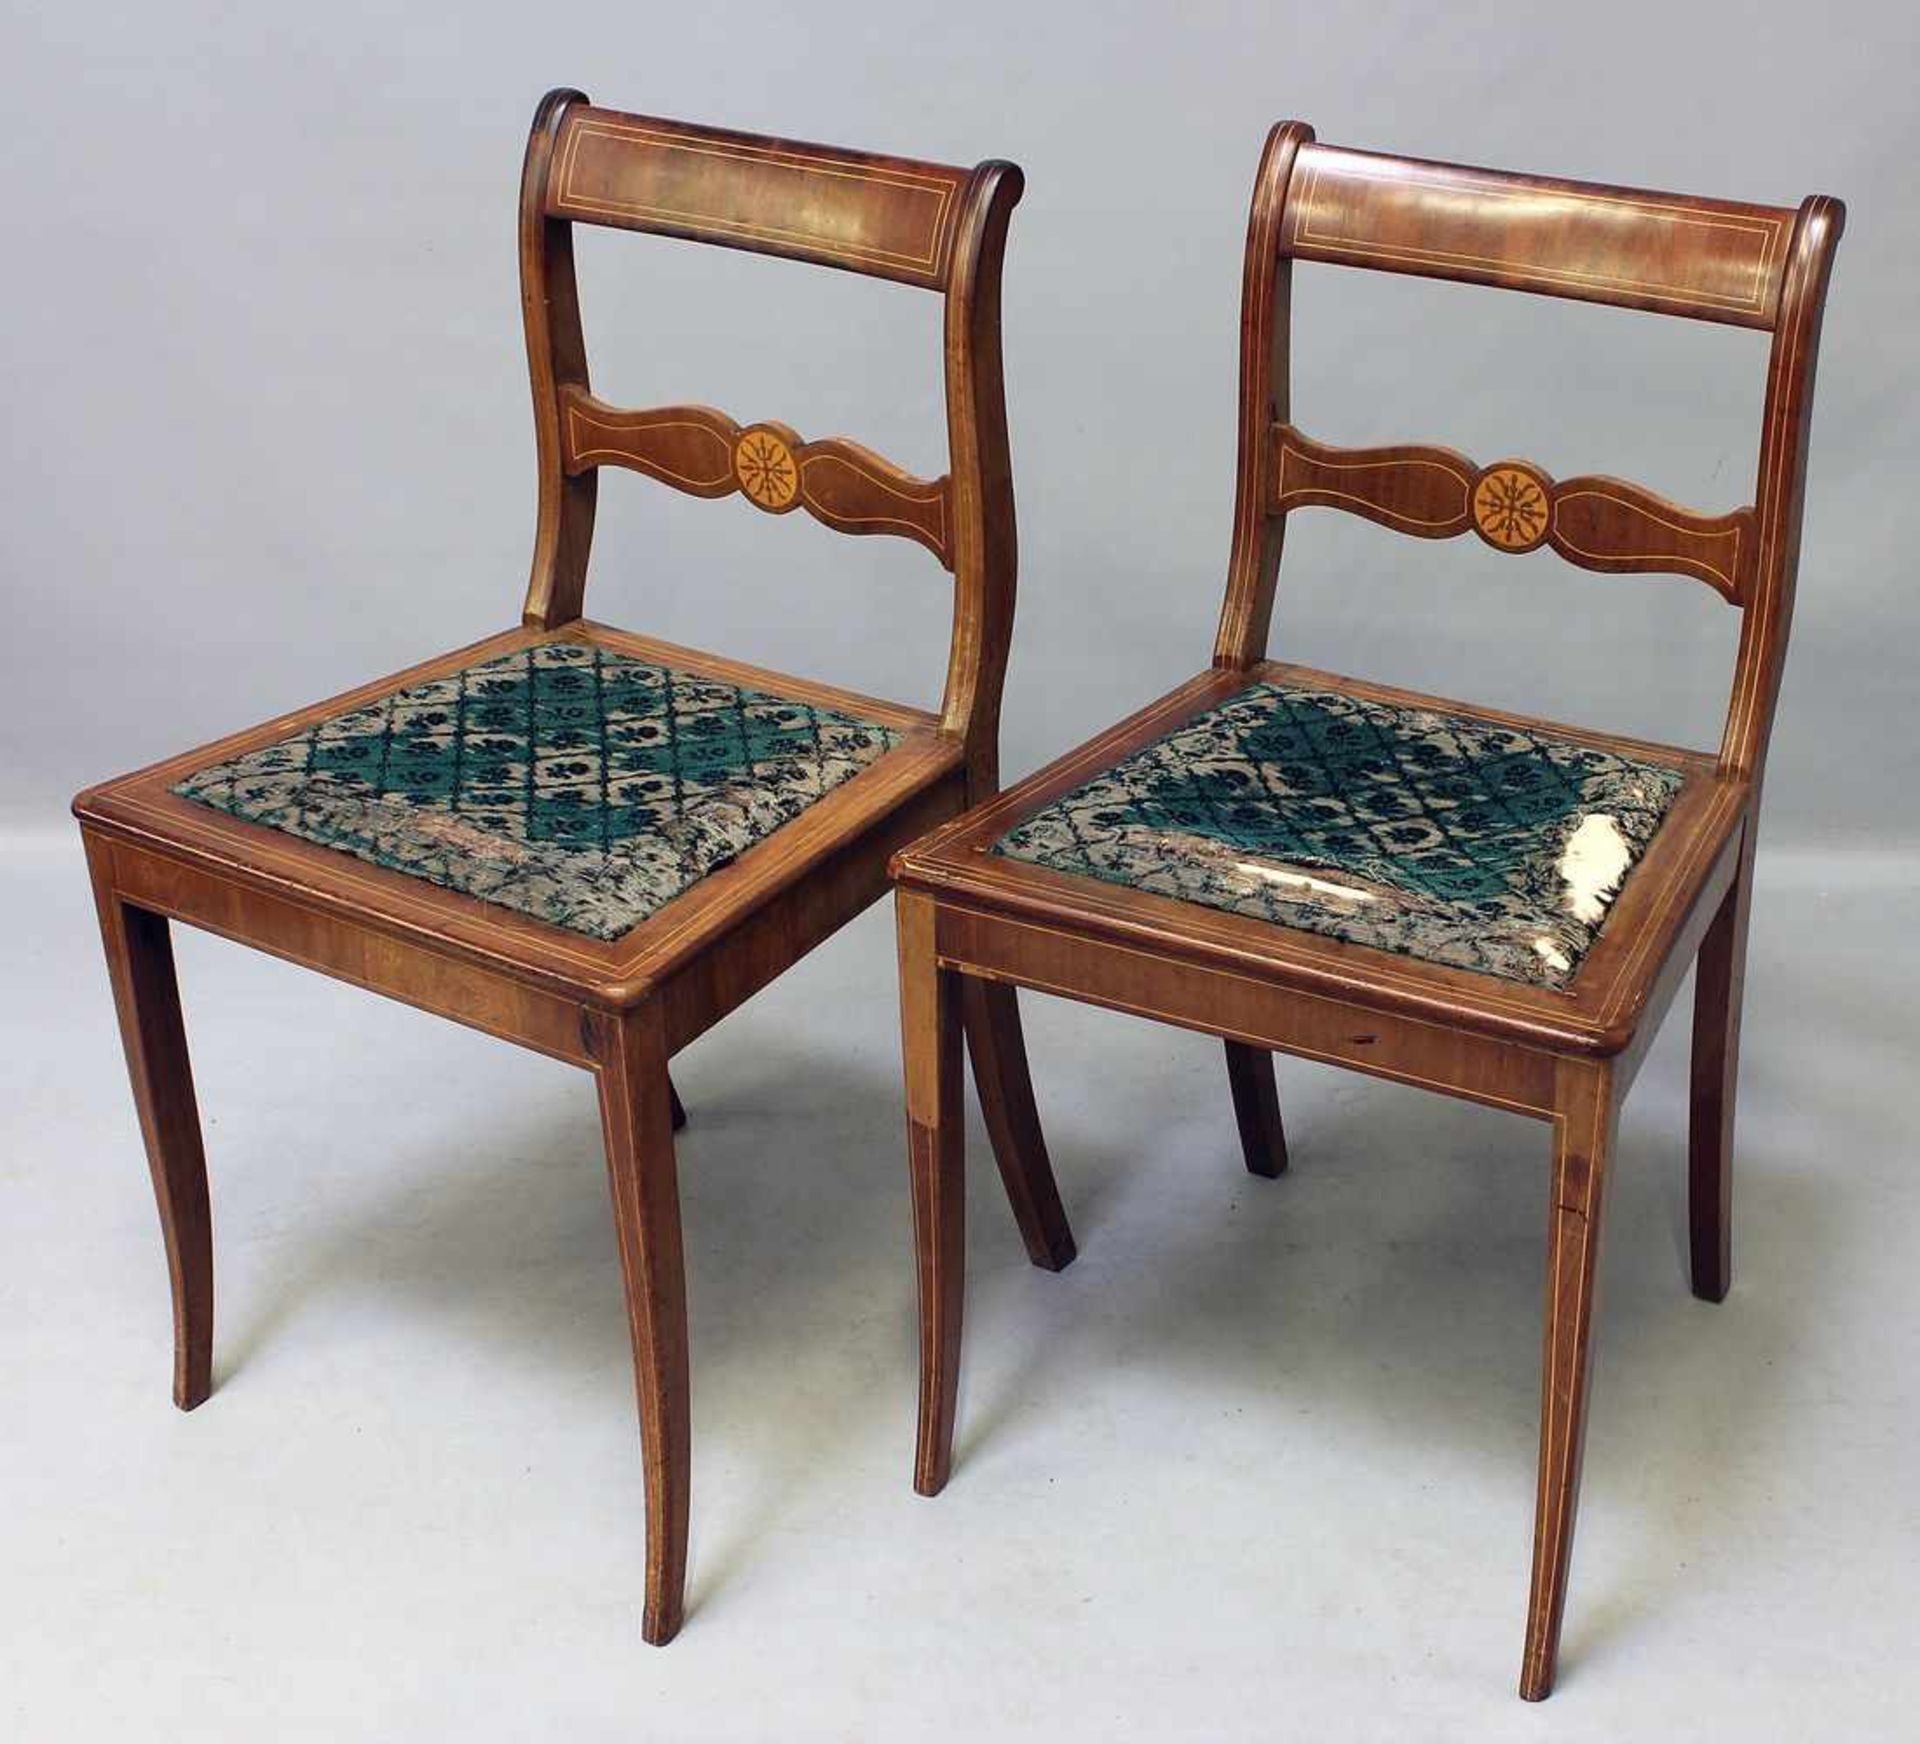 Paar Tafelstühle.Mahagoni-Furnier mit Fadeneinlage. Schmale Säbelbeine, rückwärtig in leicht